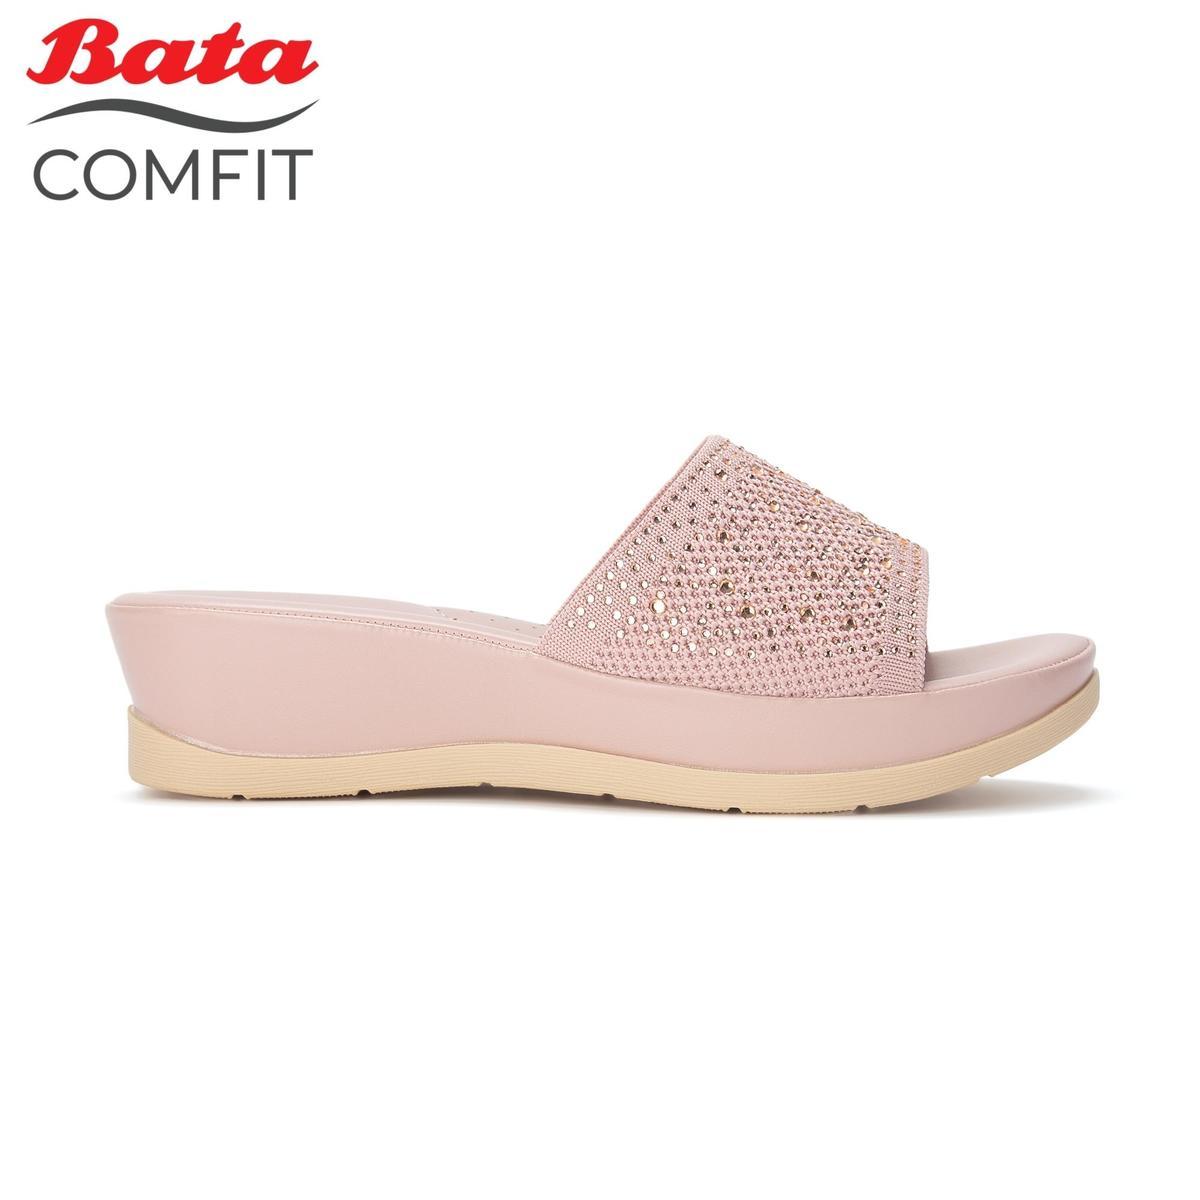 bata comfit ladies pink wedges 6615037